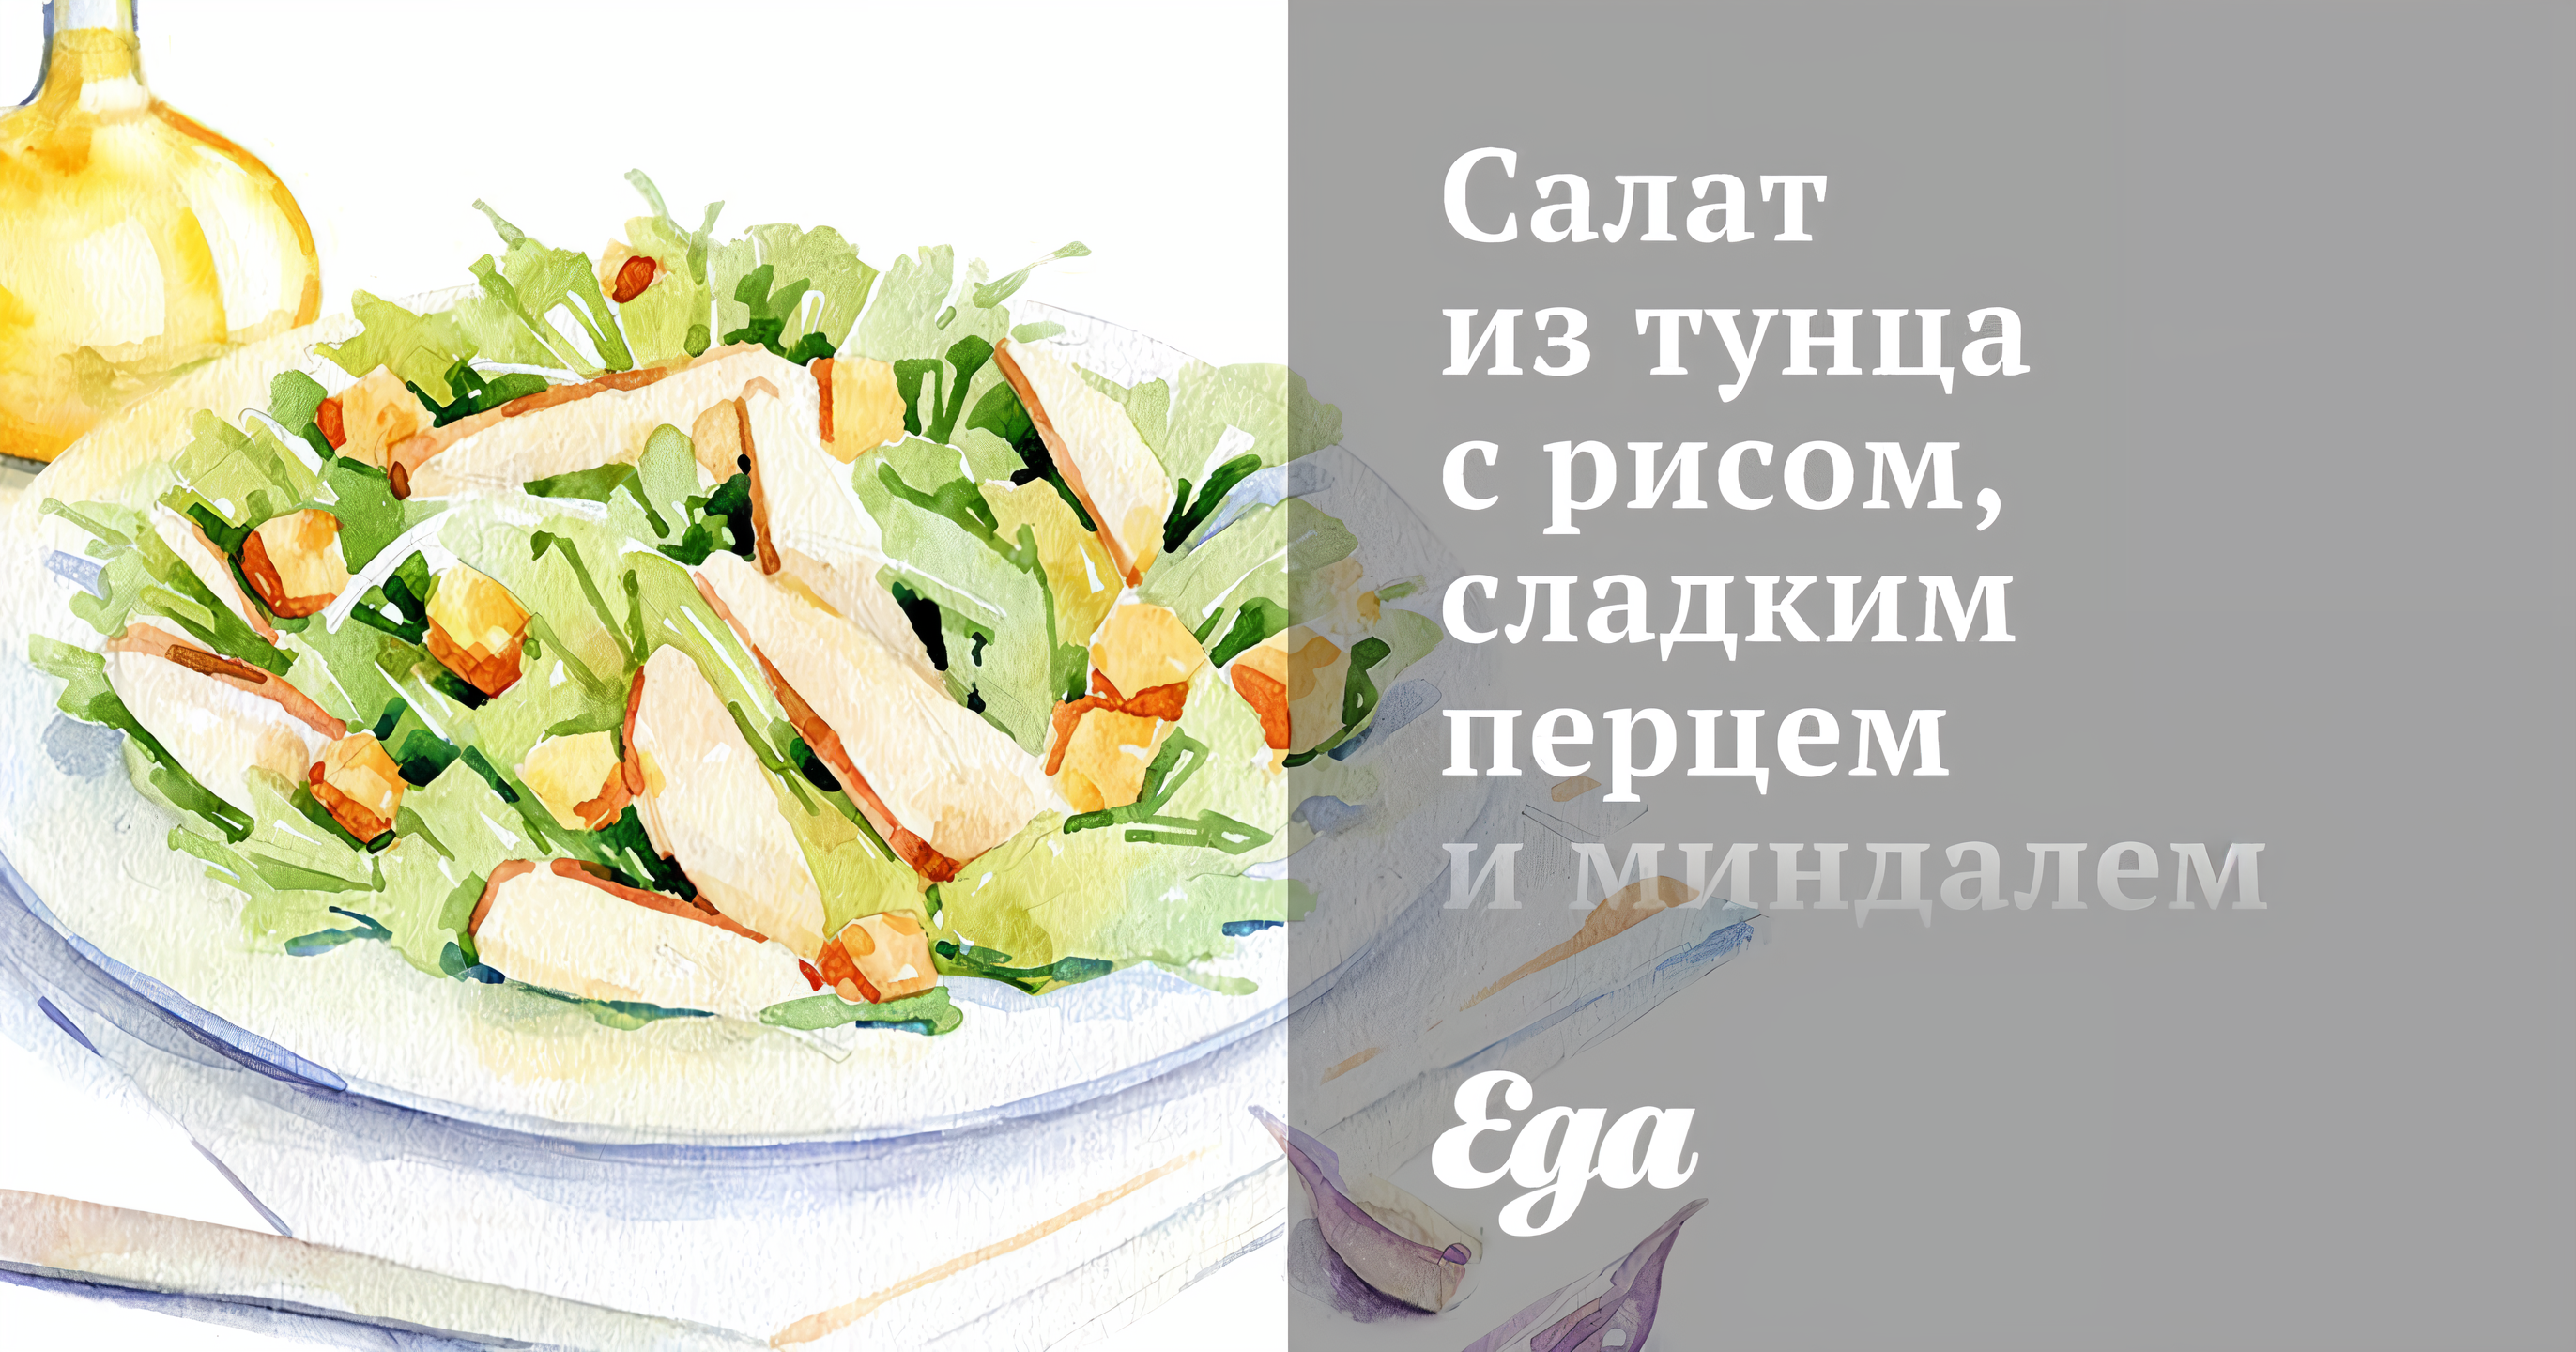 Слоеный салат с тунцом, рисом и луком рецепт – Европейская кухня: Салаты. «Еда»